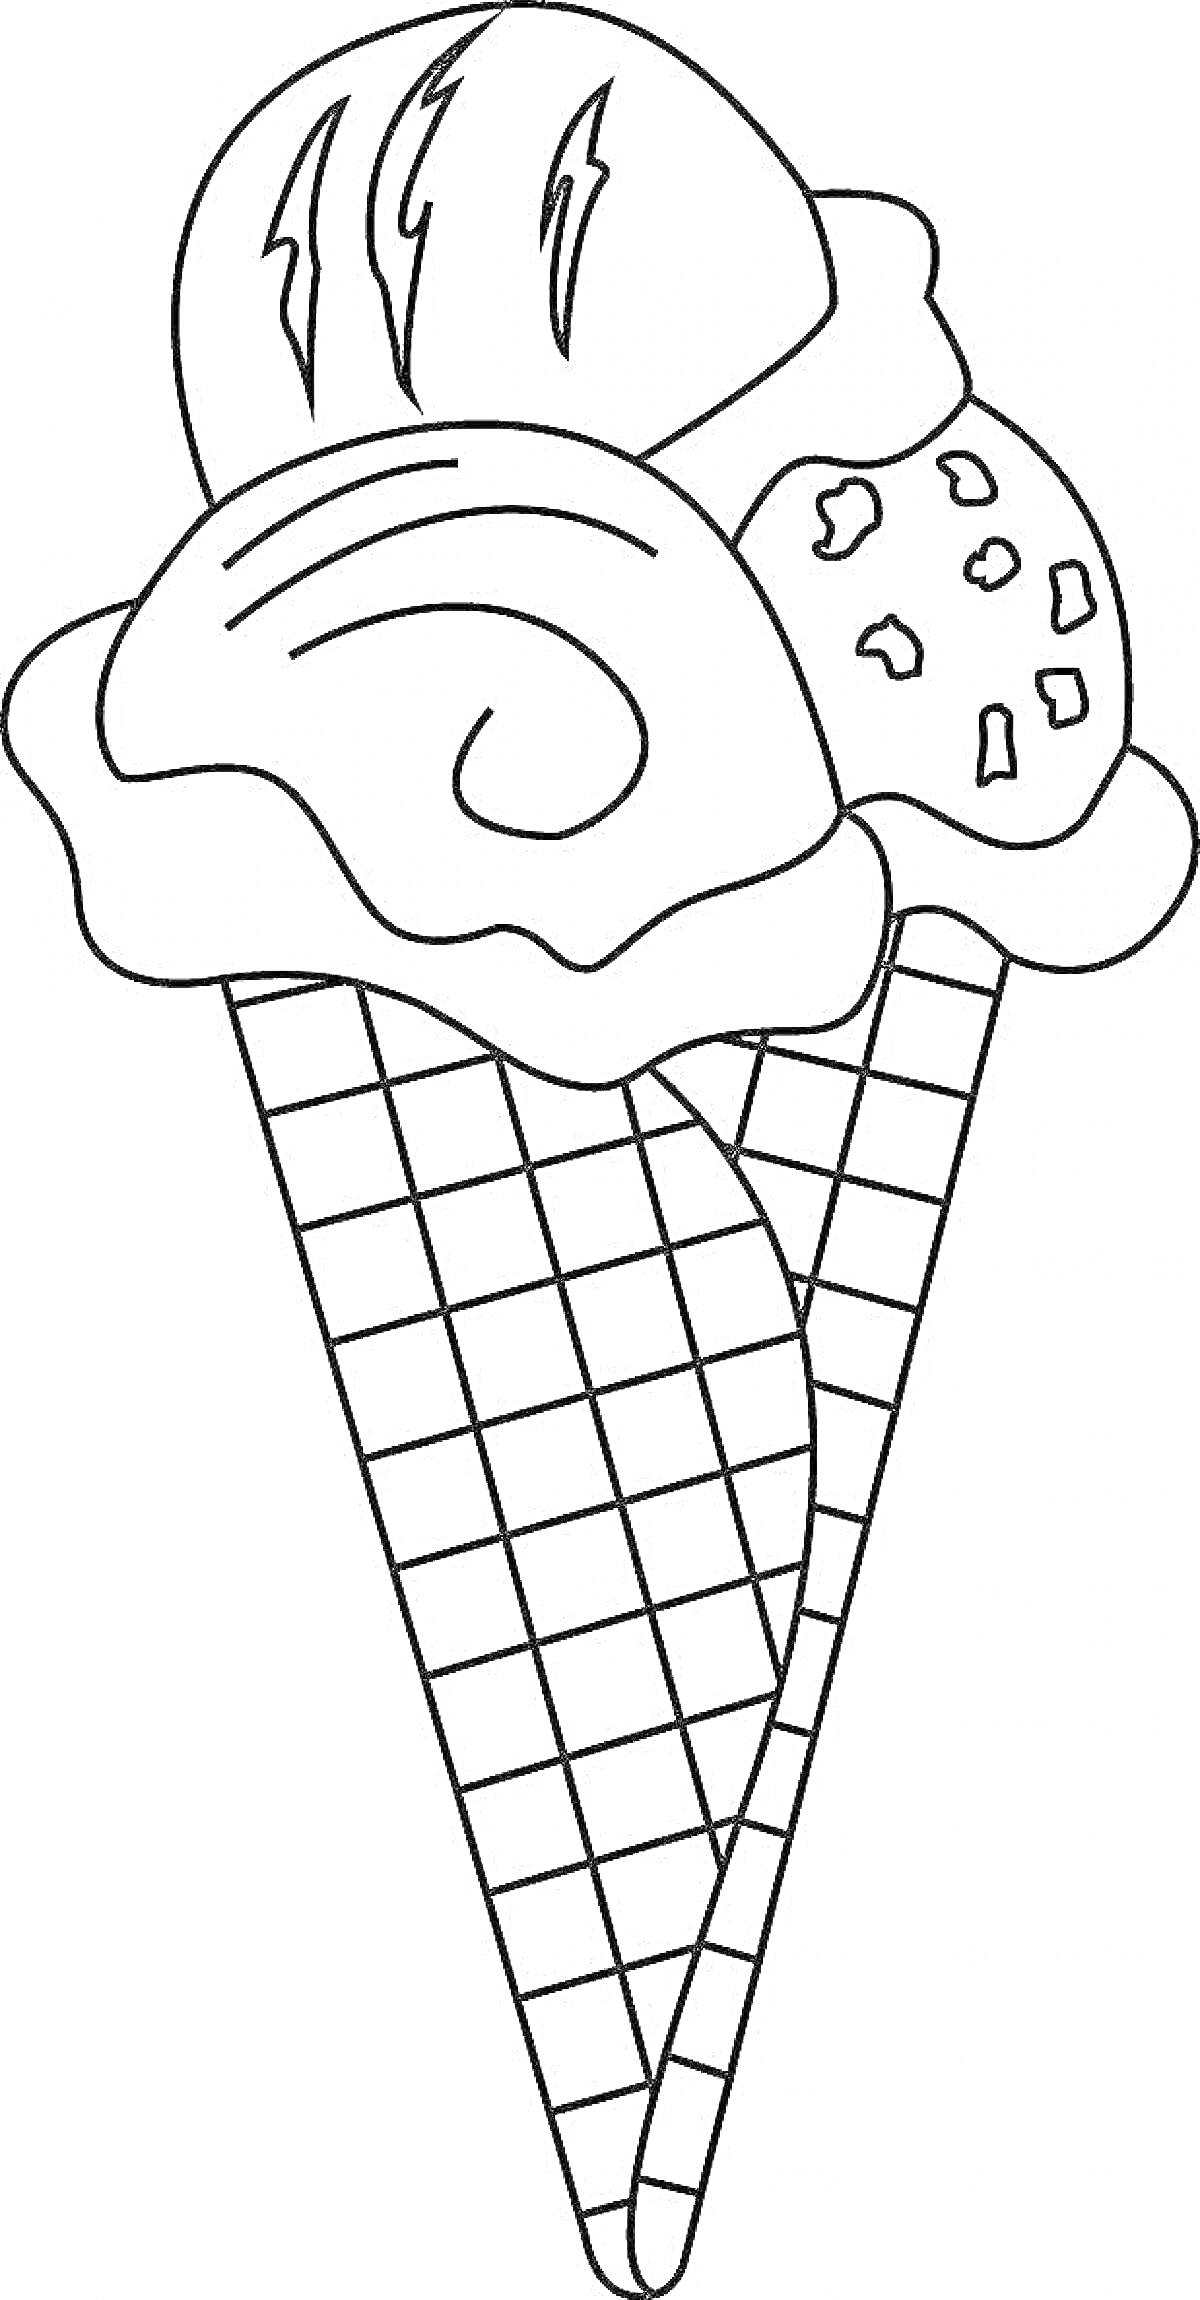 Раскраска Мороженое в вафельном рожке с тремя шариками разного вида